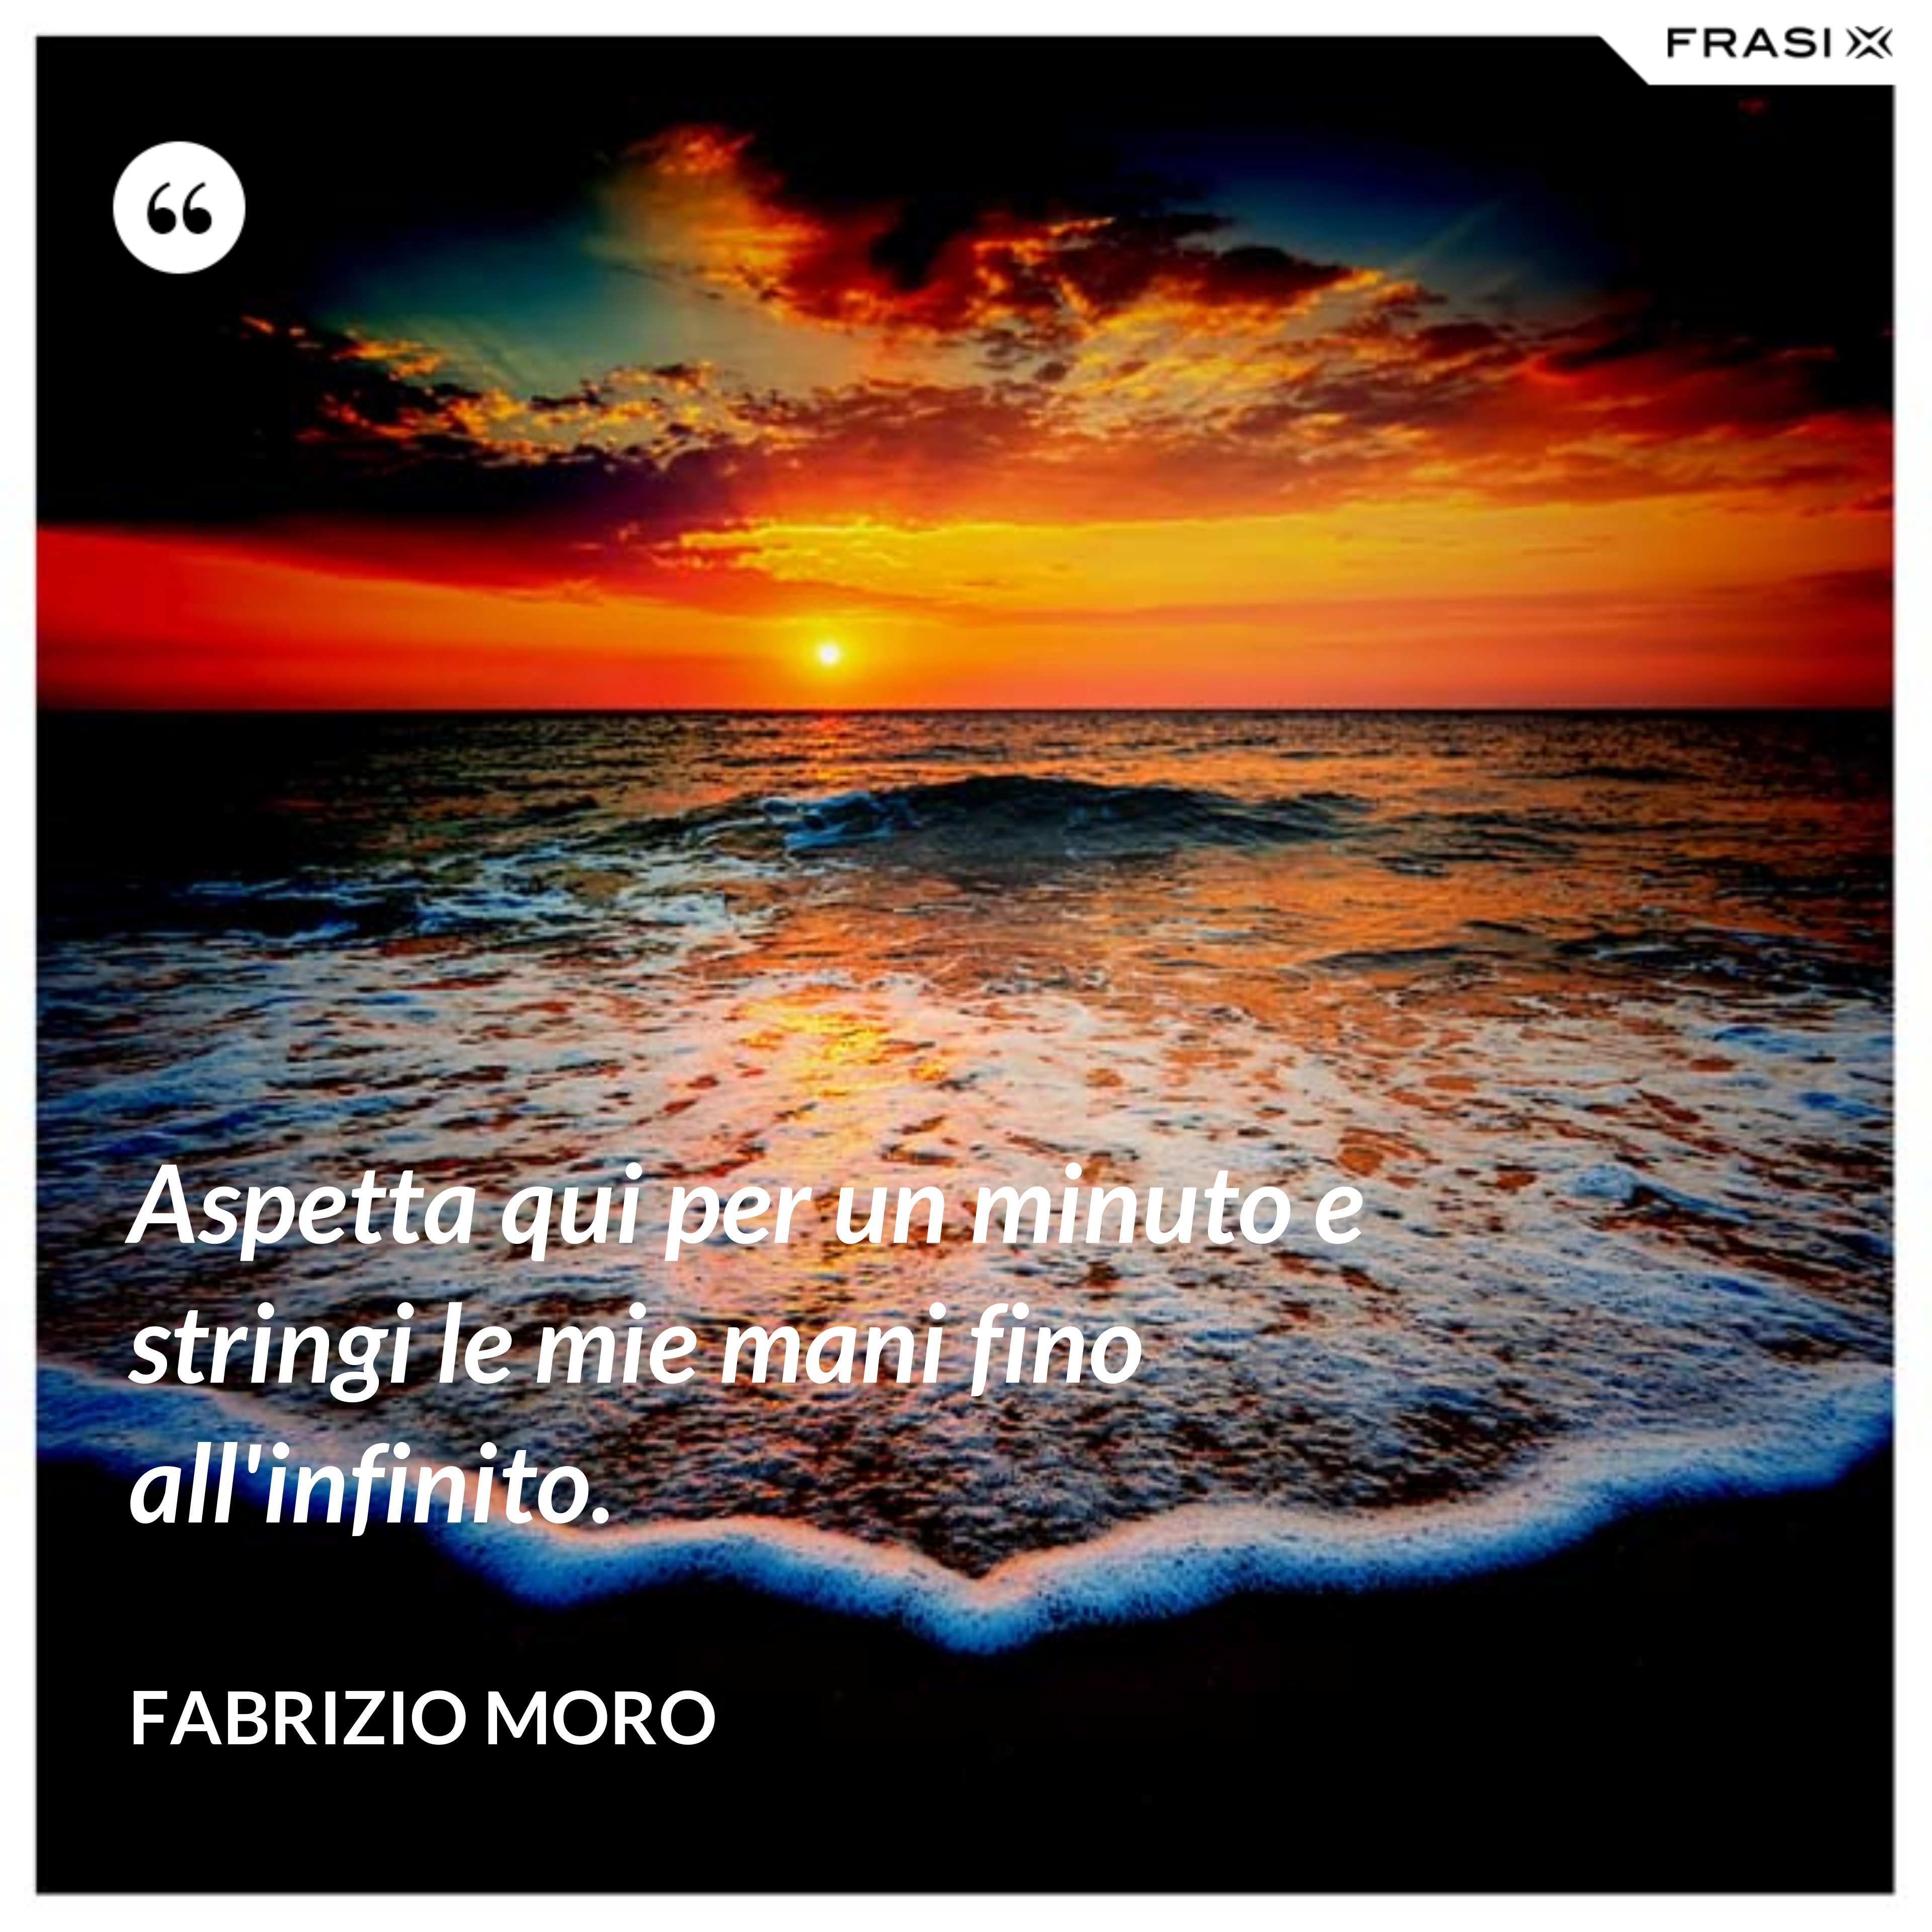 Aspetta qui per un minuto e stringi le mie mani fino all'infinito. - Fabrizio Moro